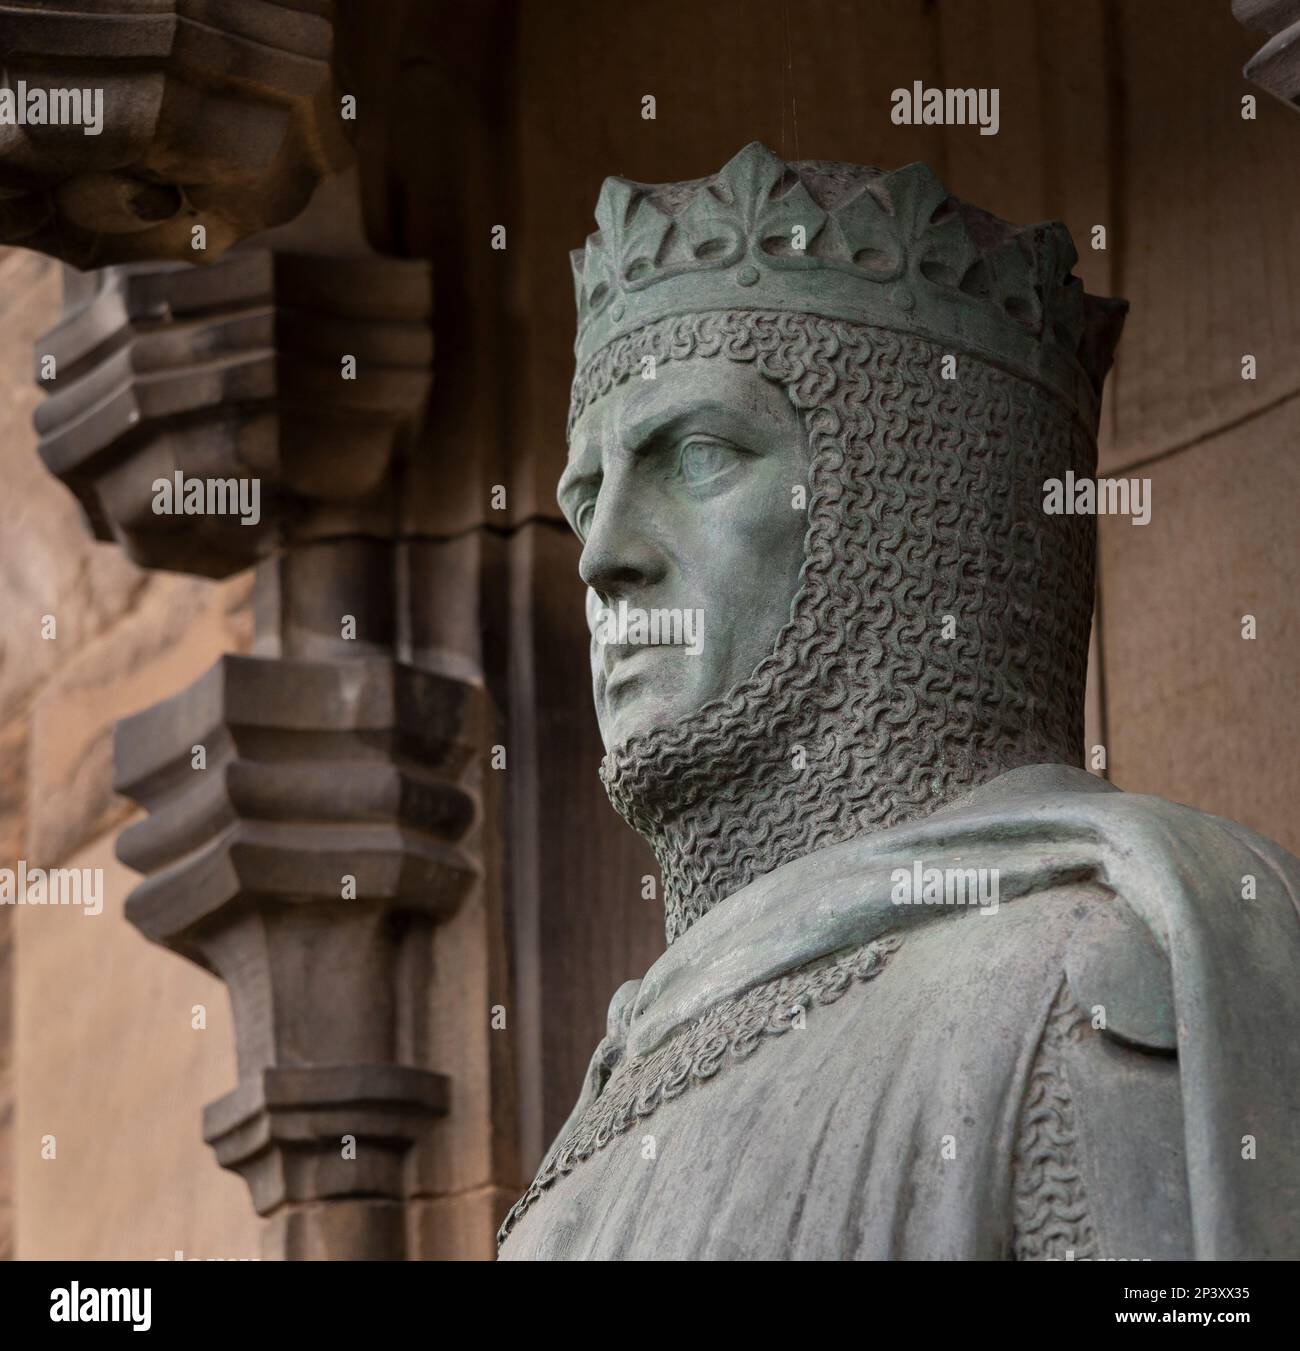 EDIMBURGO, SCOZIA, EUROPA - Statua di Robert the Bruce, re di Scozia, all'ingresso del Castello di Edimburgo. Scultore Thomas Clapperton. Foto Stock